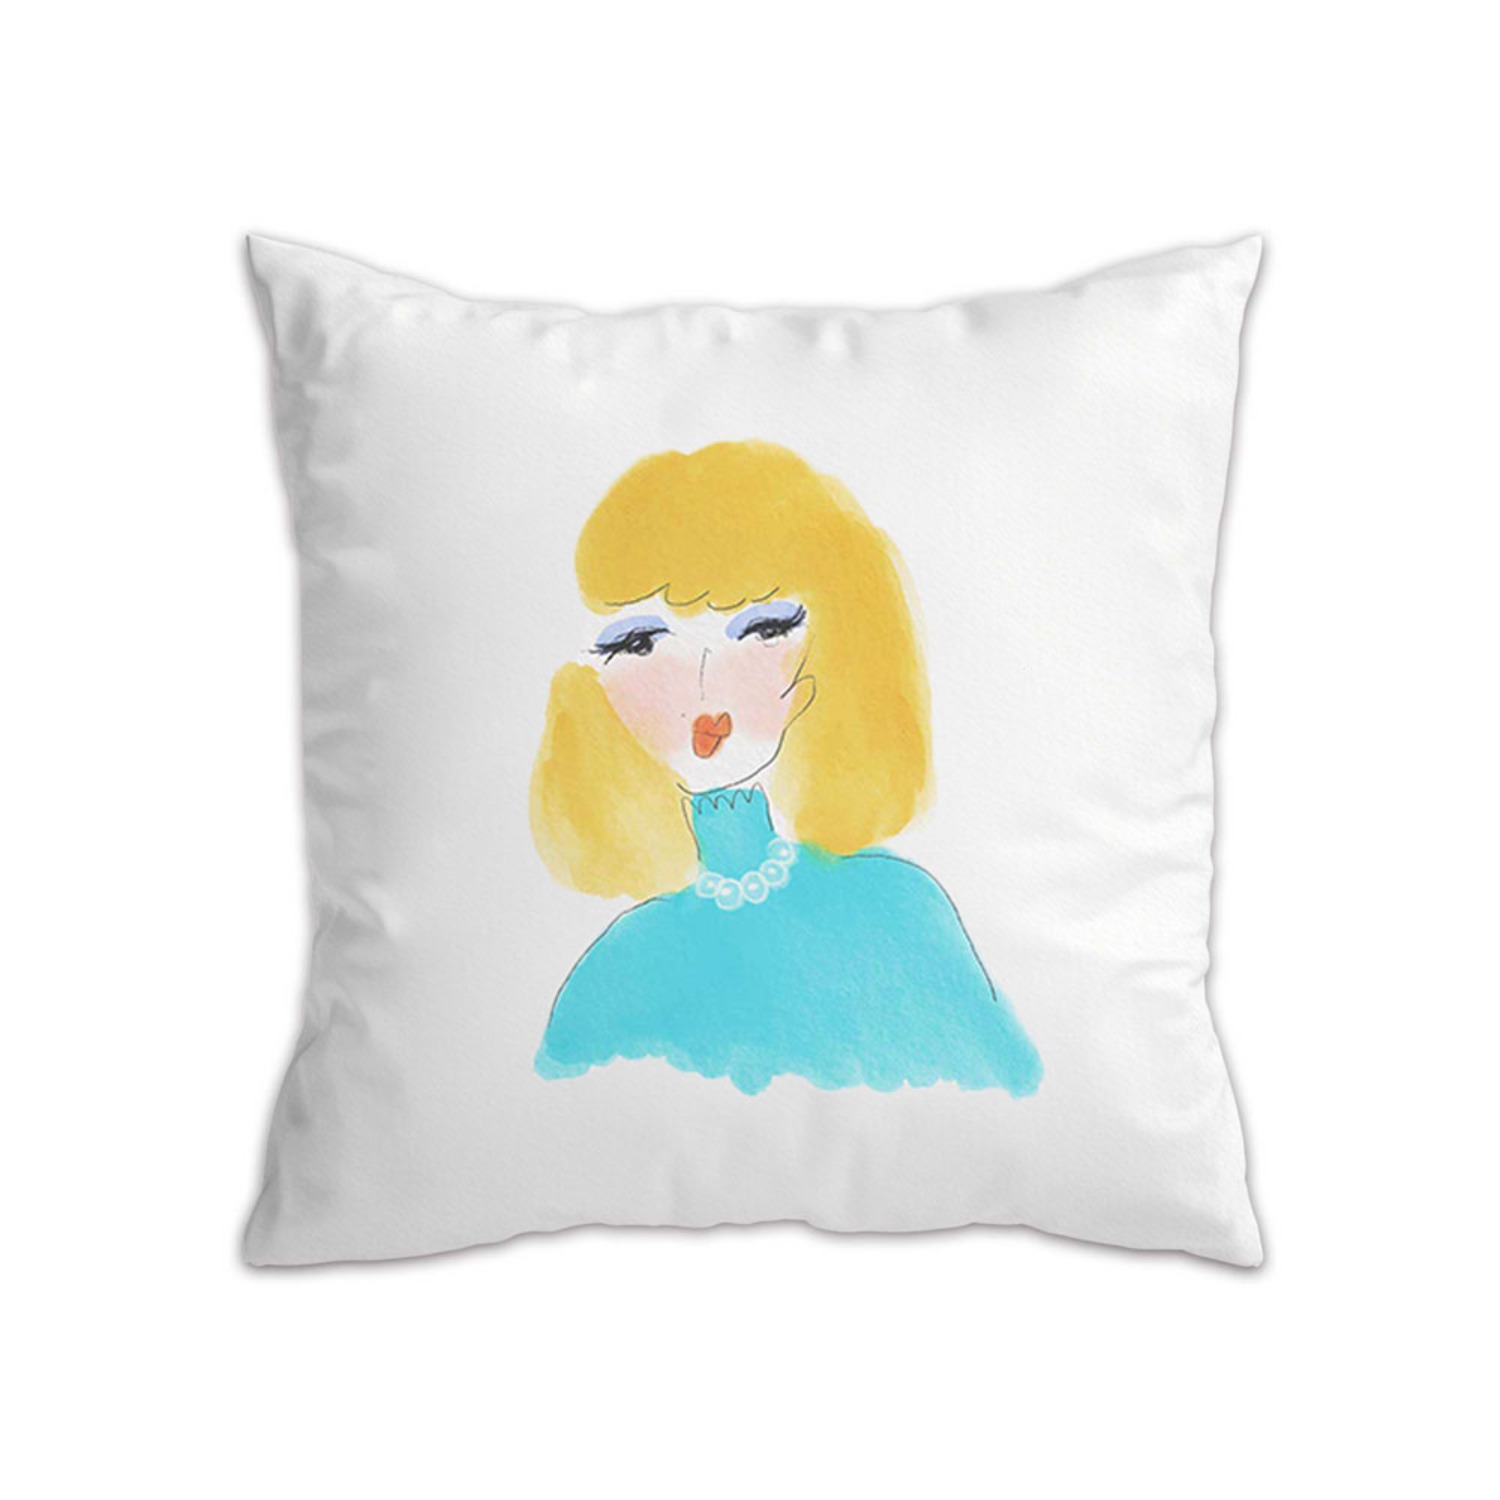 [a.o.b] Joy cushion